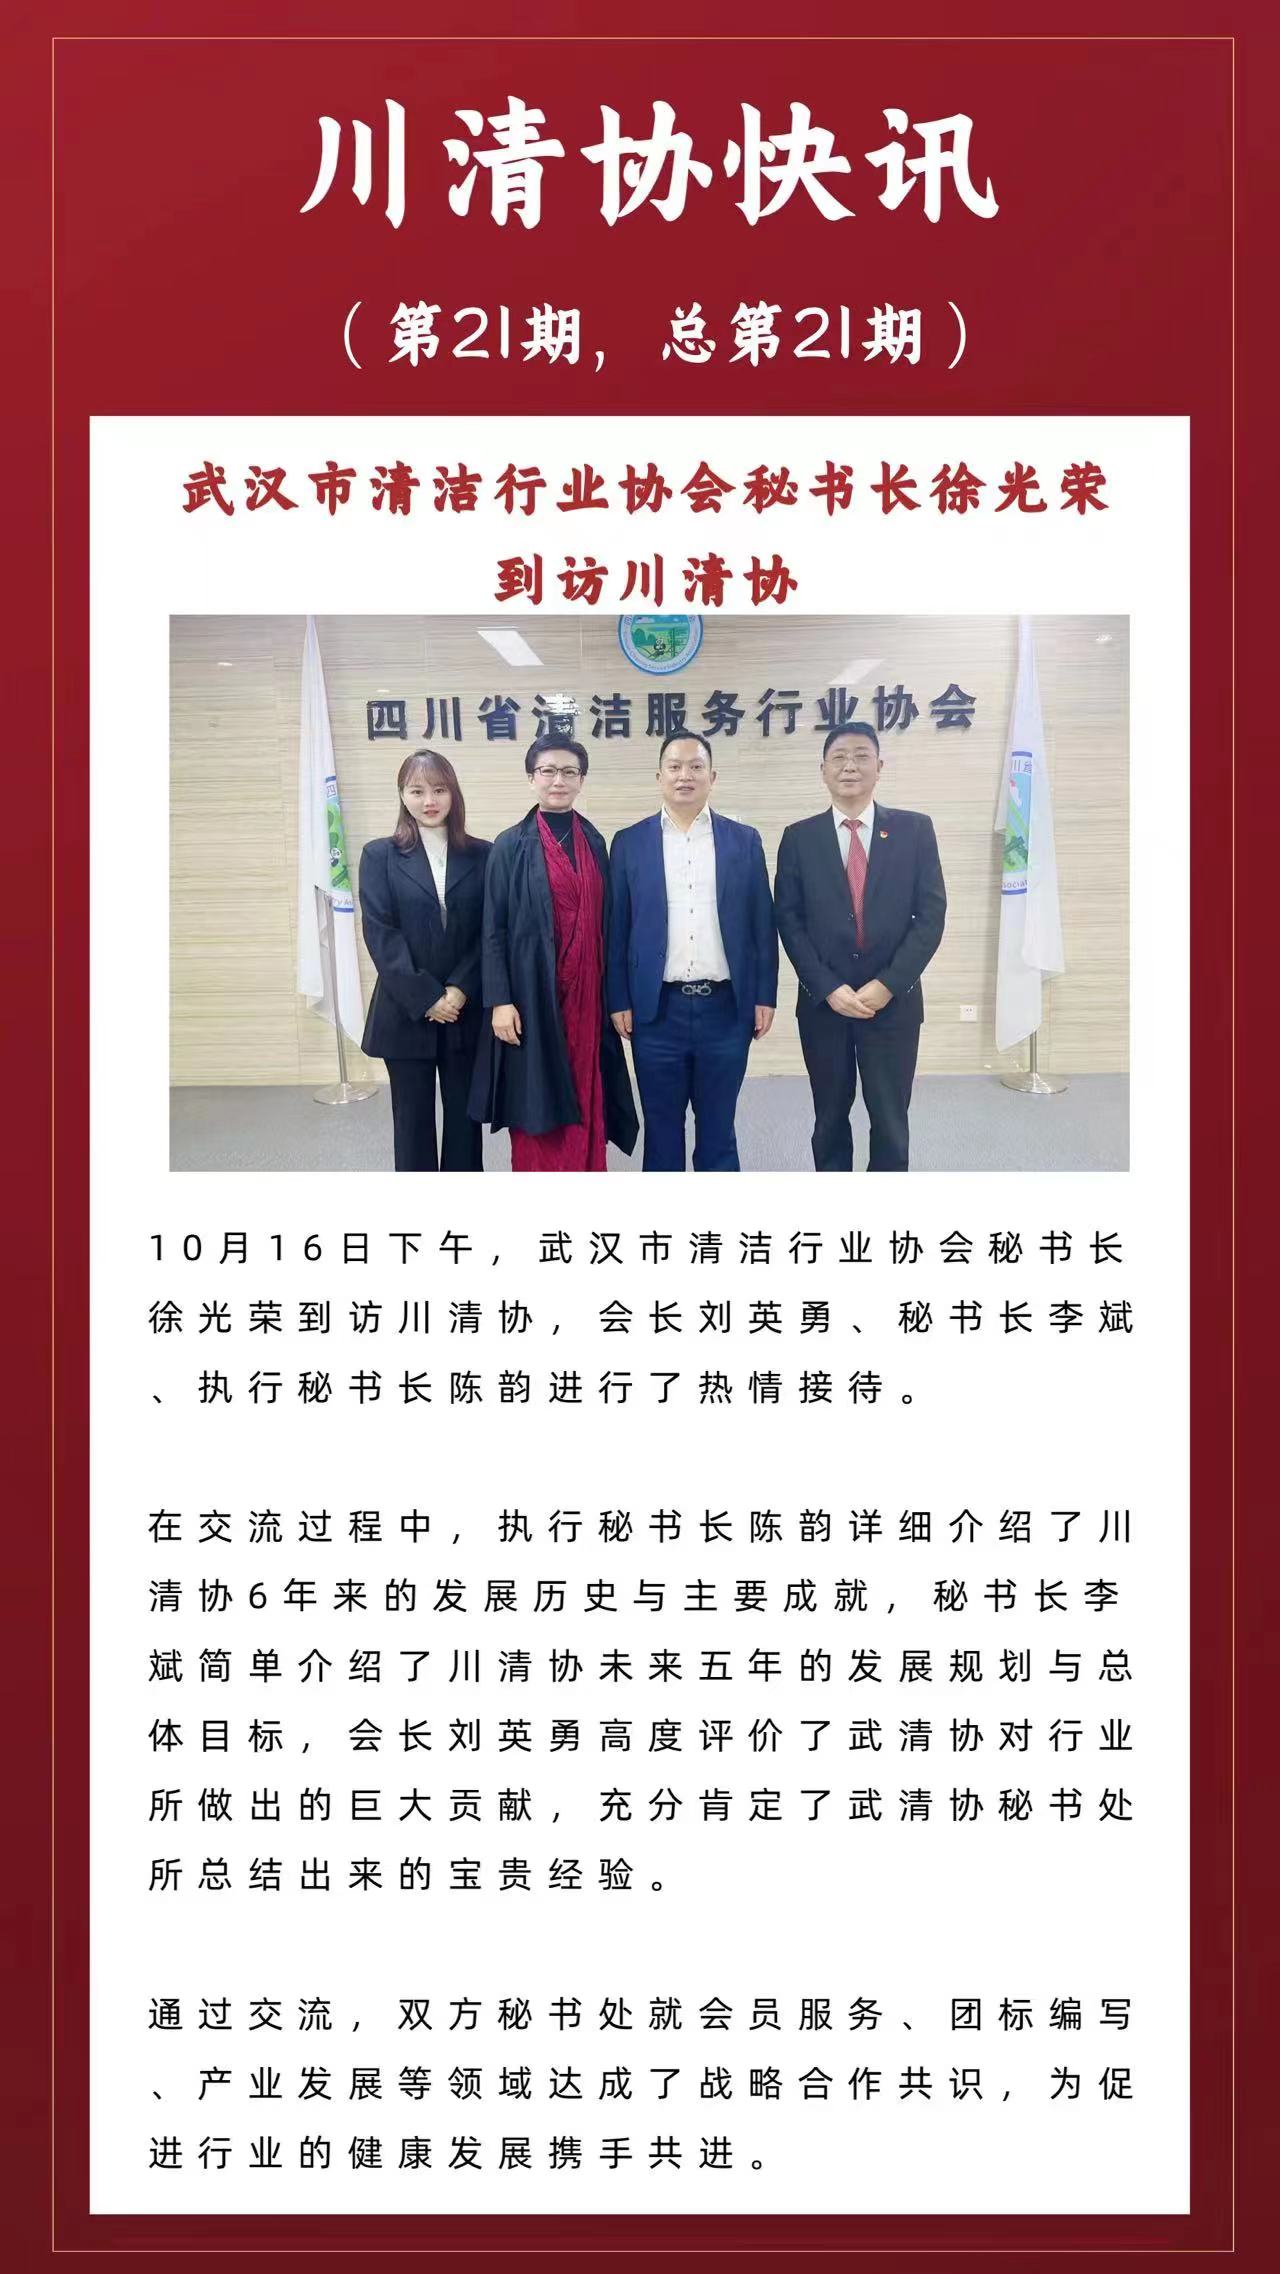 武汉市清洁行业协会秘书长徐光荣到访川清协